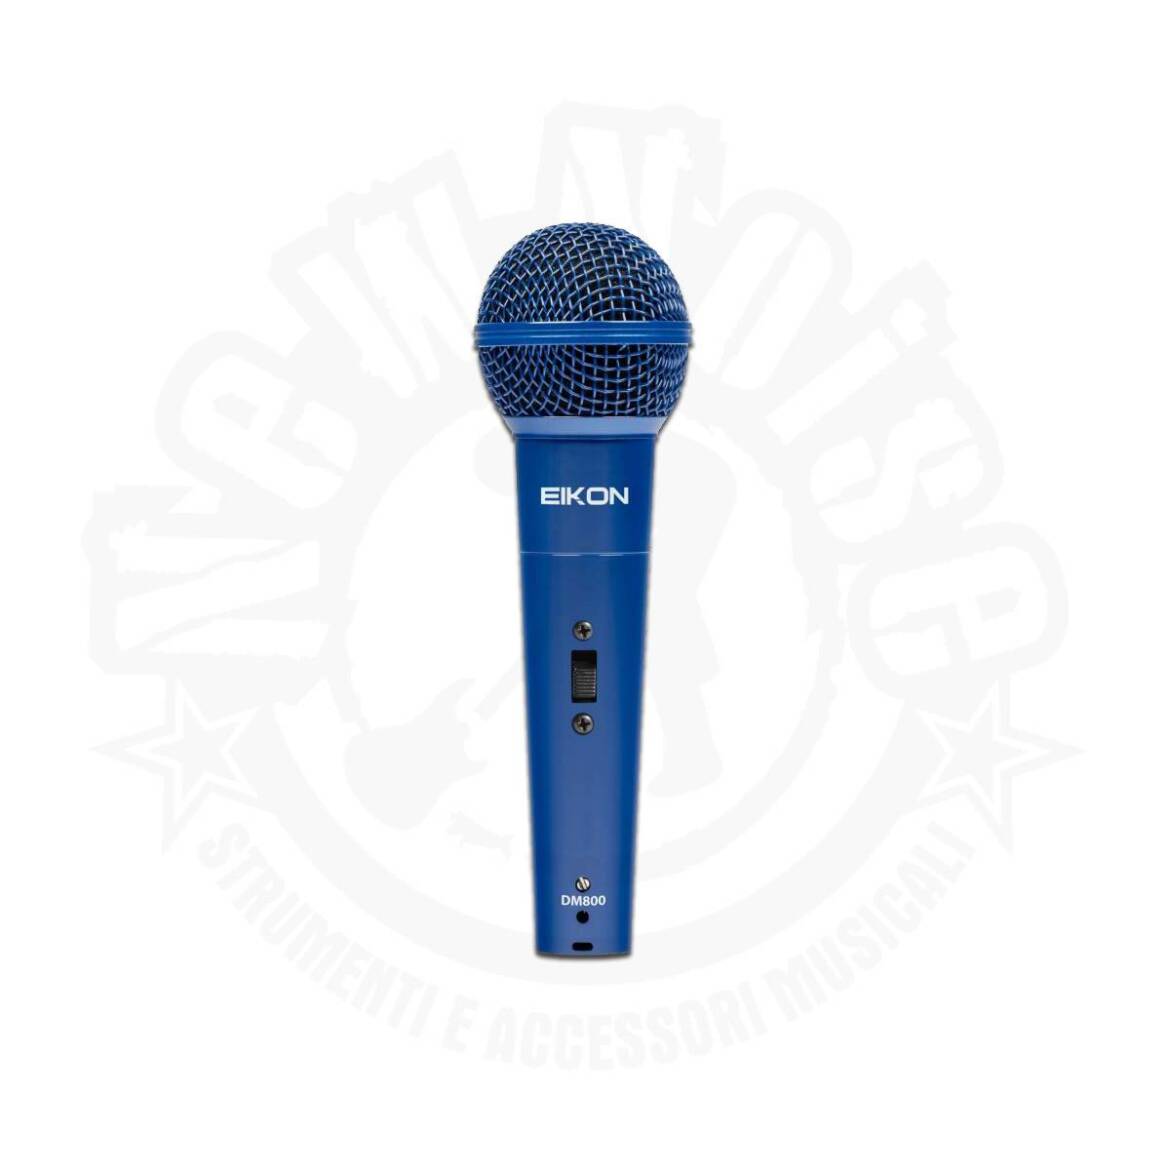 EIKON – DM800BL – Microfono dinamico blu con cavo incluso